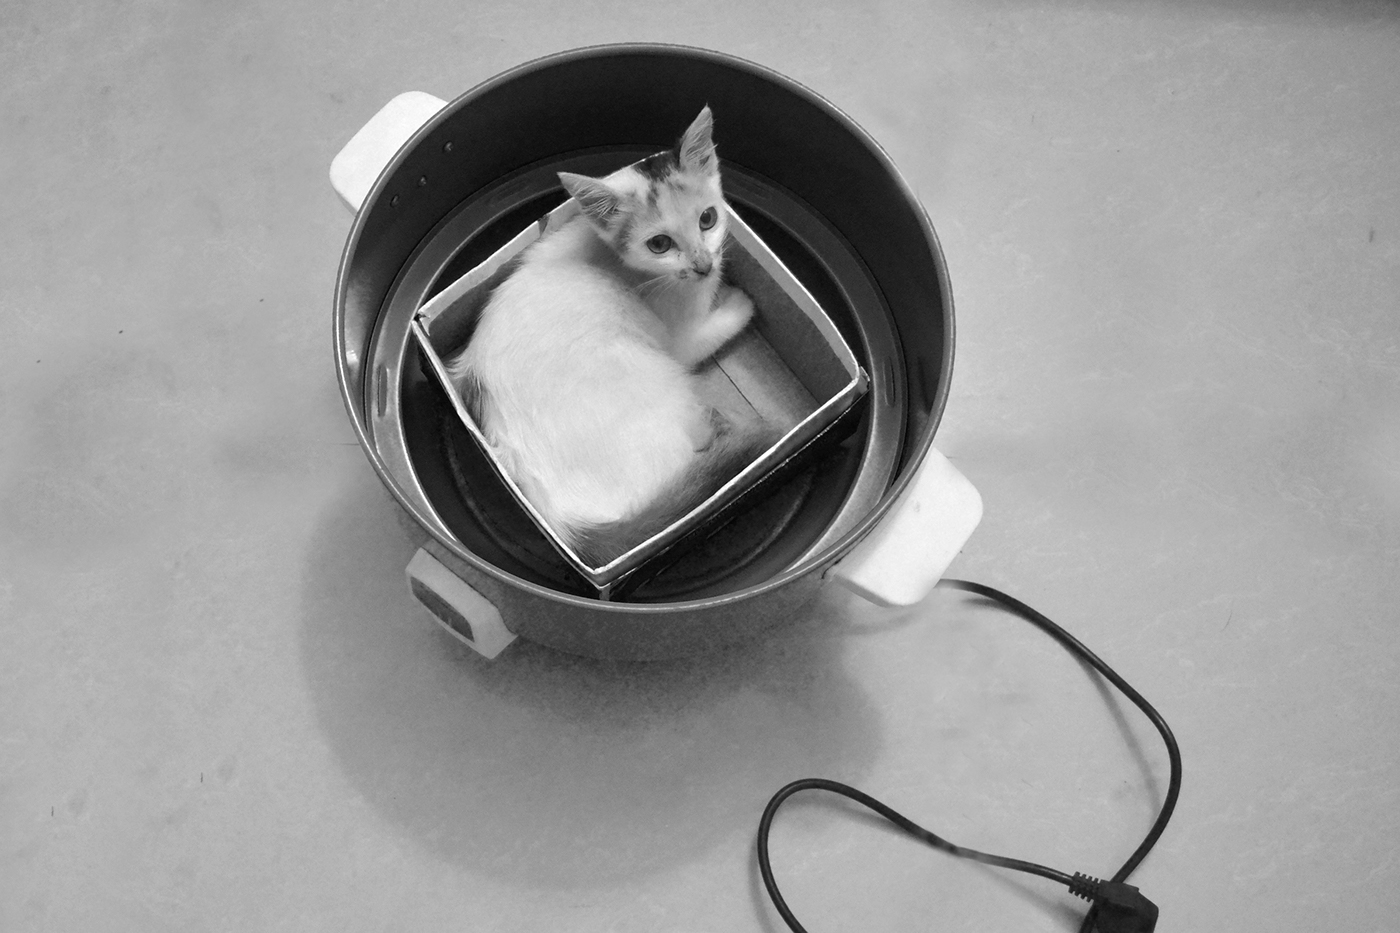 Cat catportait Photography  indoorphotography glamourportait photos